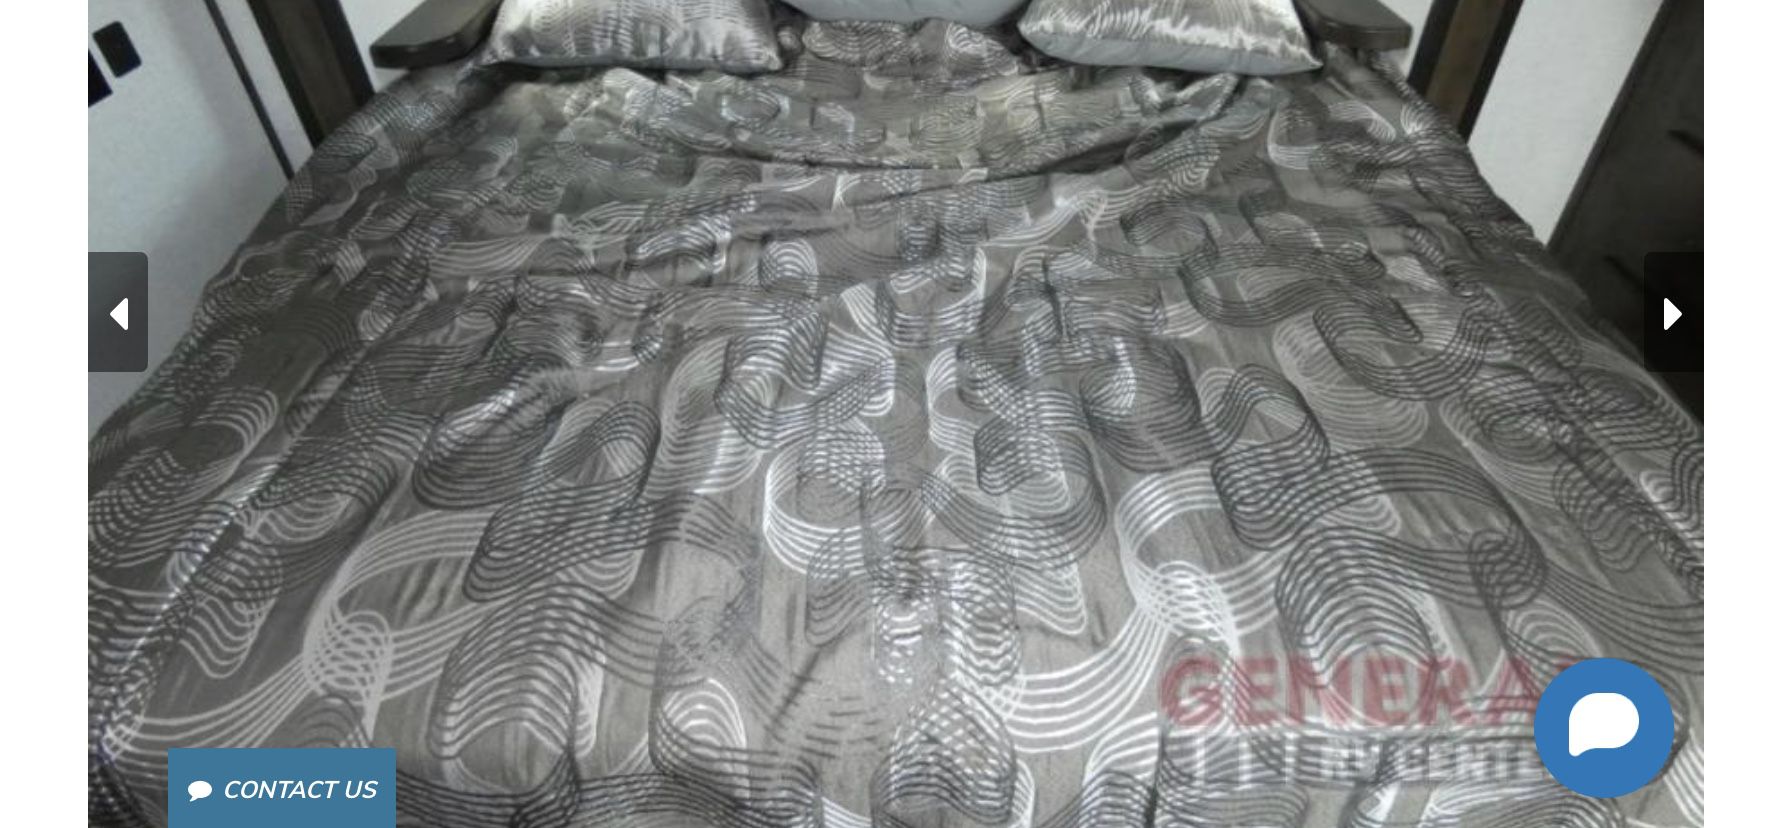 RV king size mattress 72x80